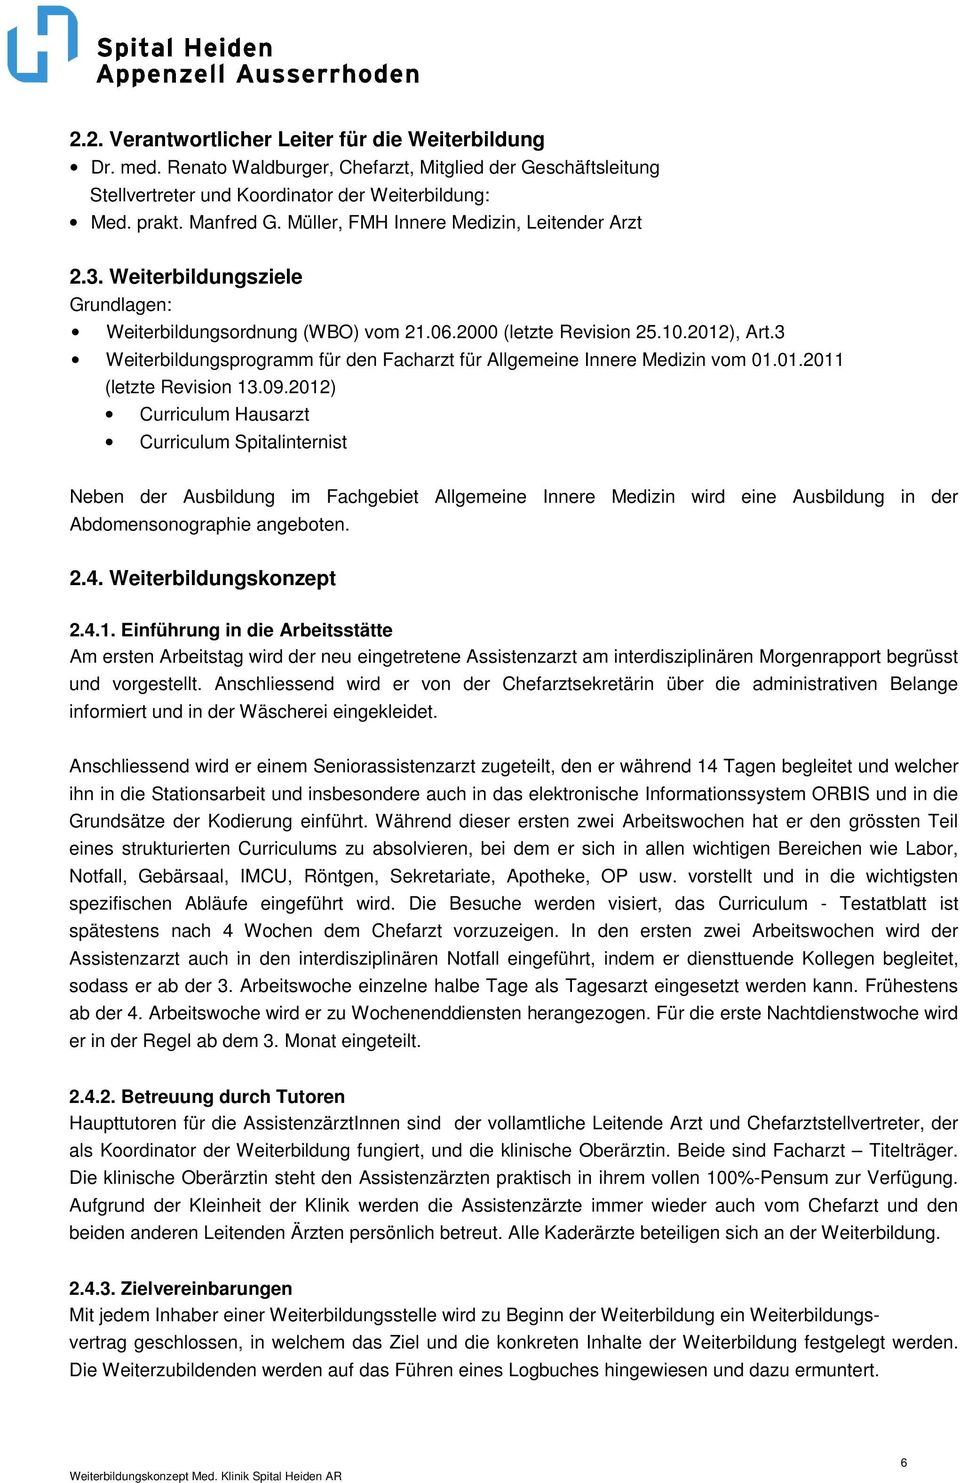 3 Weiterbildungsprogramm für den Facharzt für Allgemeine Innere Medizin vom 01.01.2011 (letzte Revision 13.09.